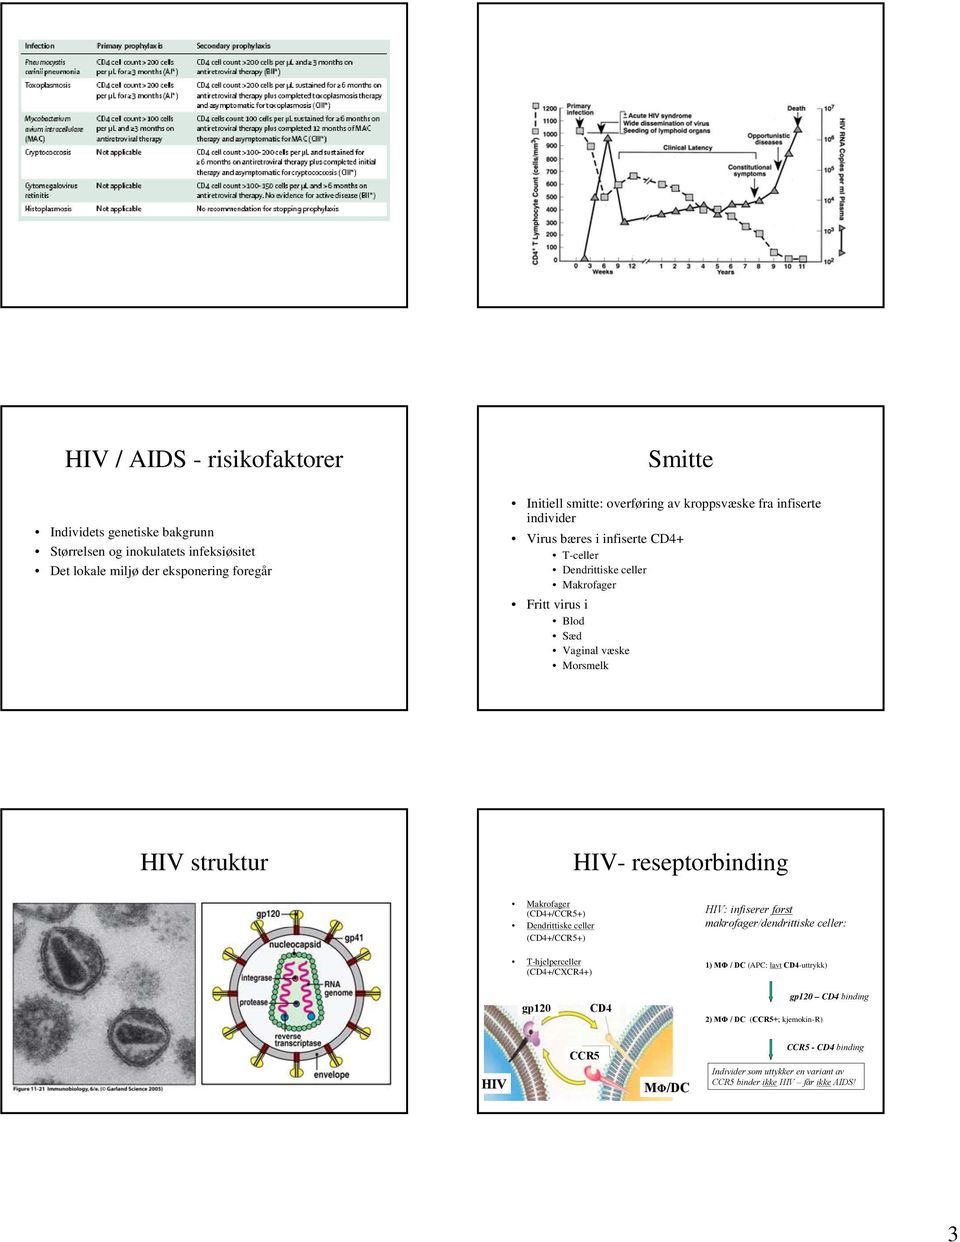 reseptorbinding Makrofager (CD4+/CCR5+) Dendrittiske celler (CD4+/CCR5+) T-hjelperceller (CD4+/CXCR4+) HIV: infiserer først makrofager/dendrittiske celler: 1) MΦ / DC (APC: